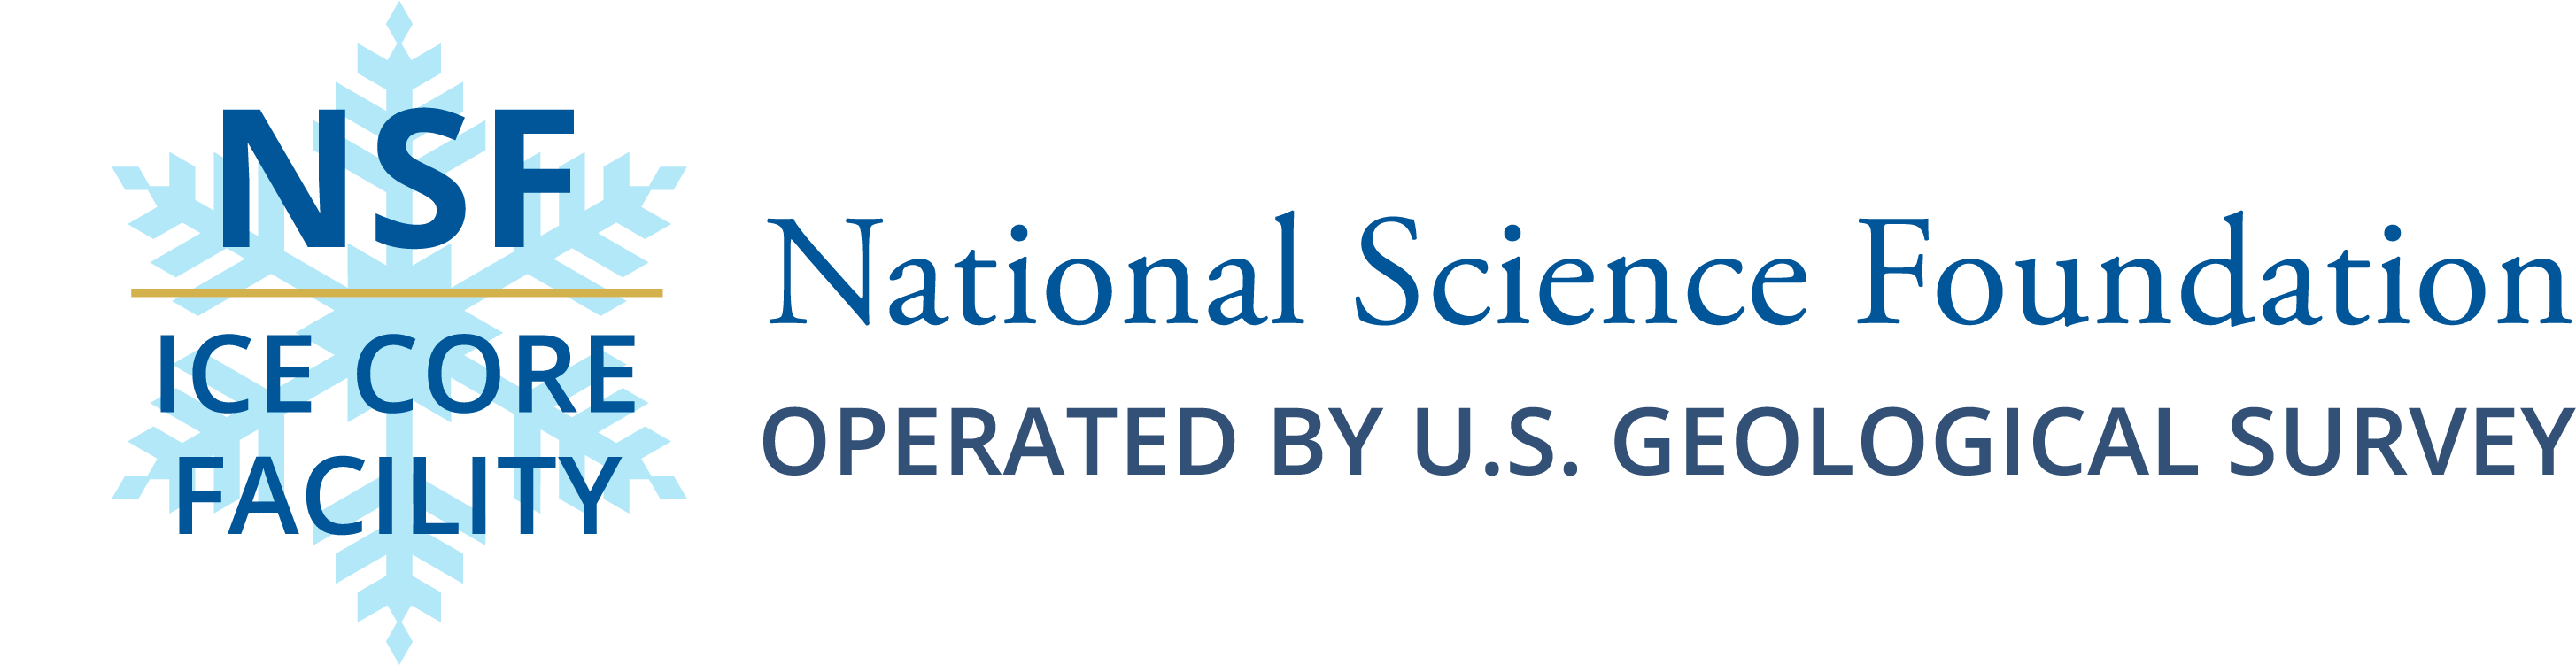 NSF-ICF logo